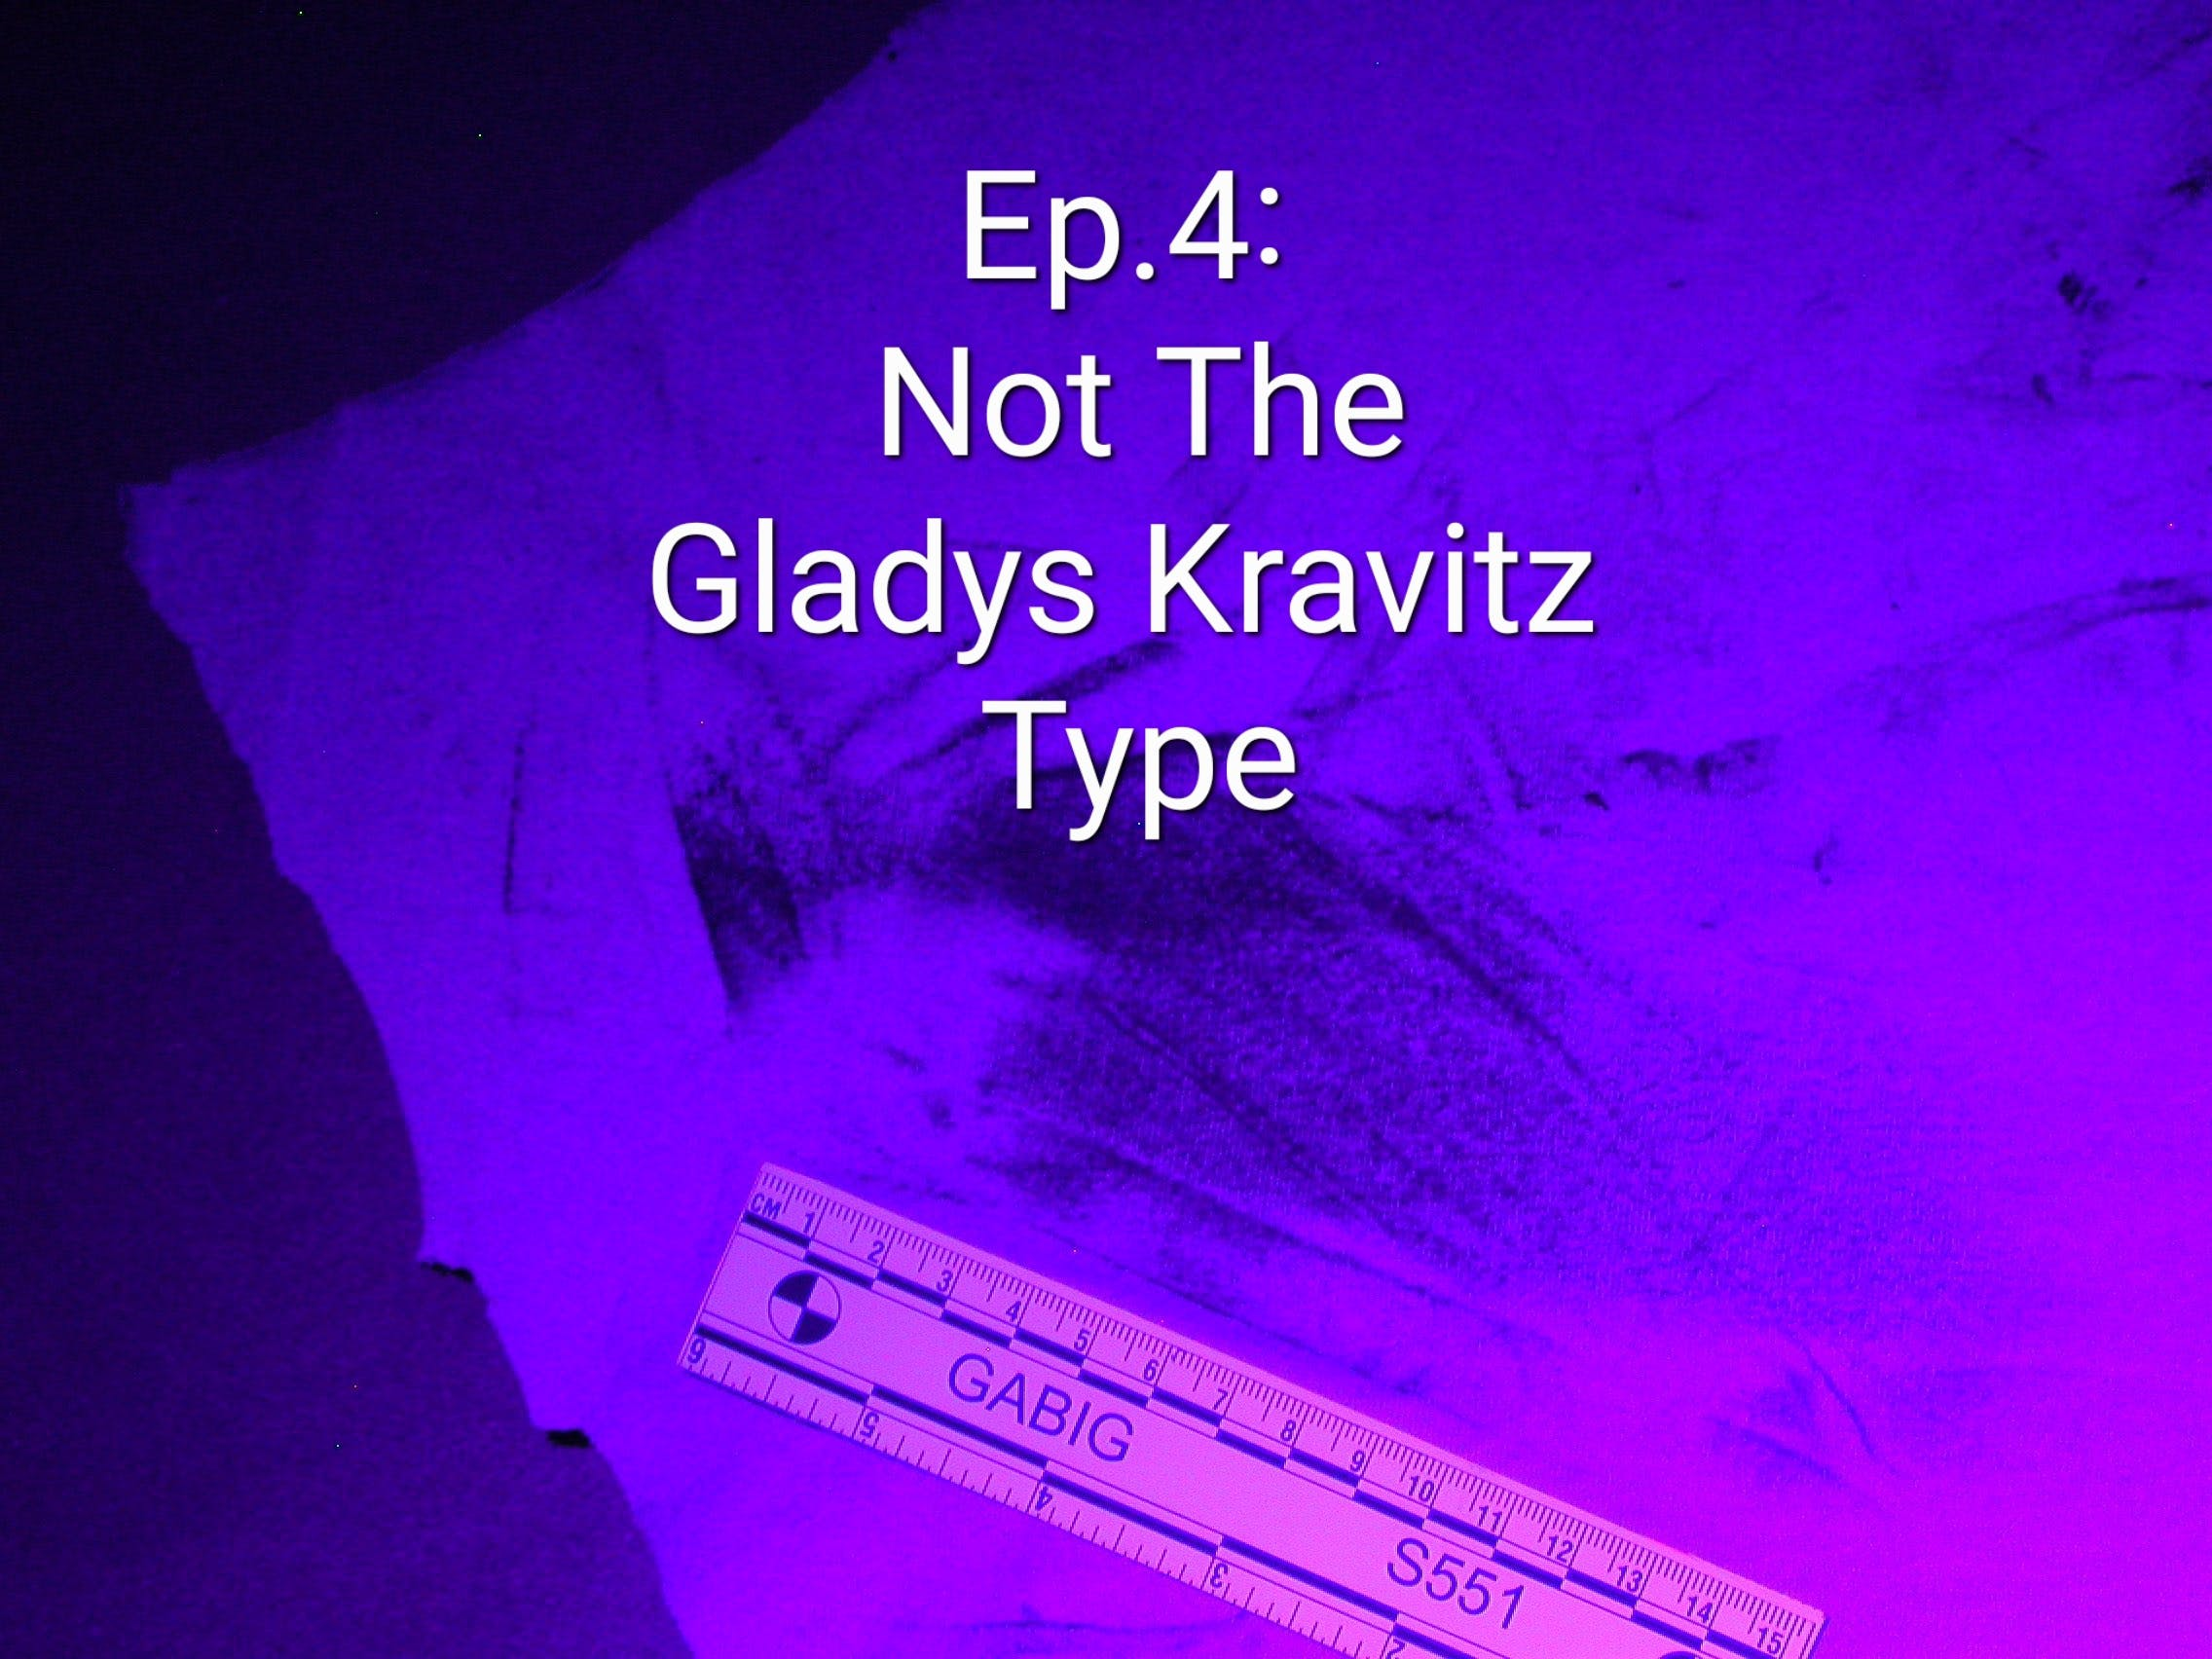 Not the Gladys Kravitz type